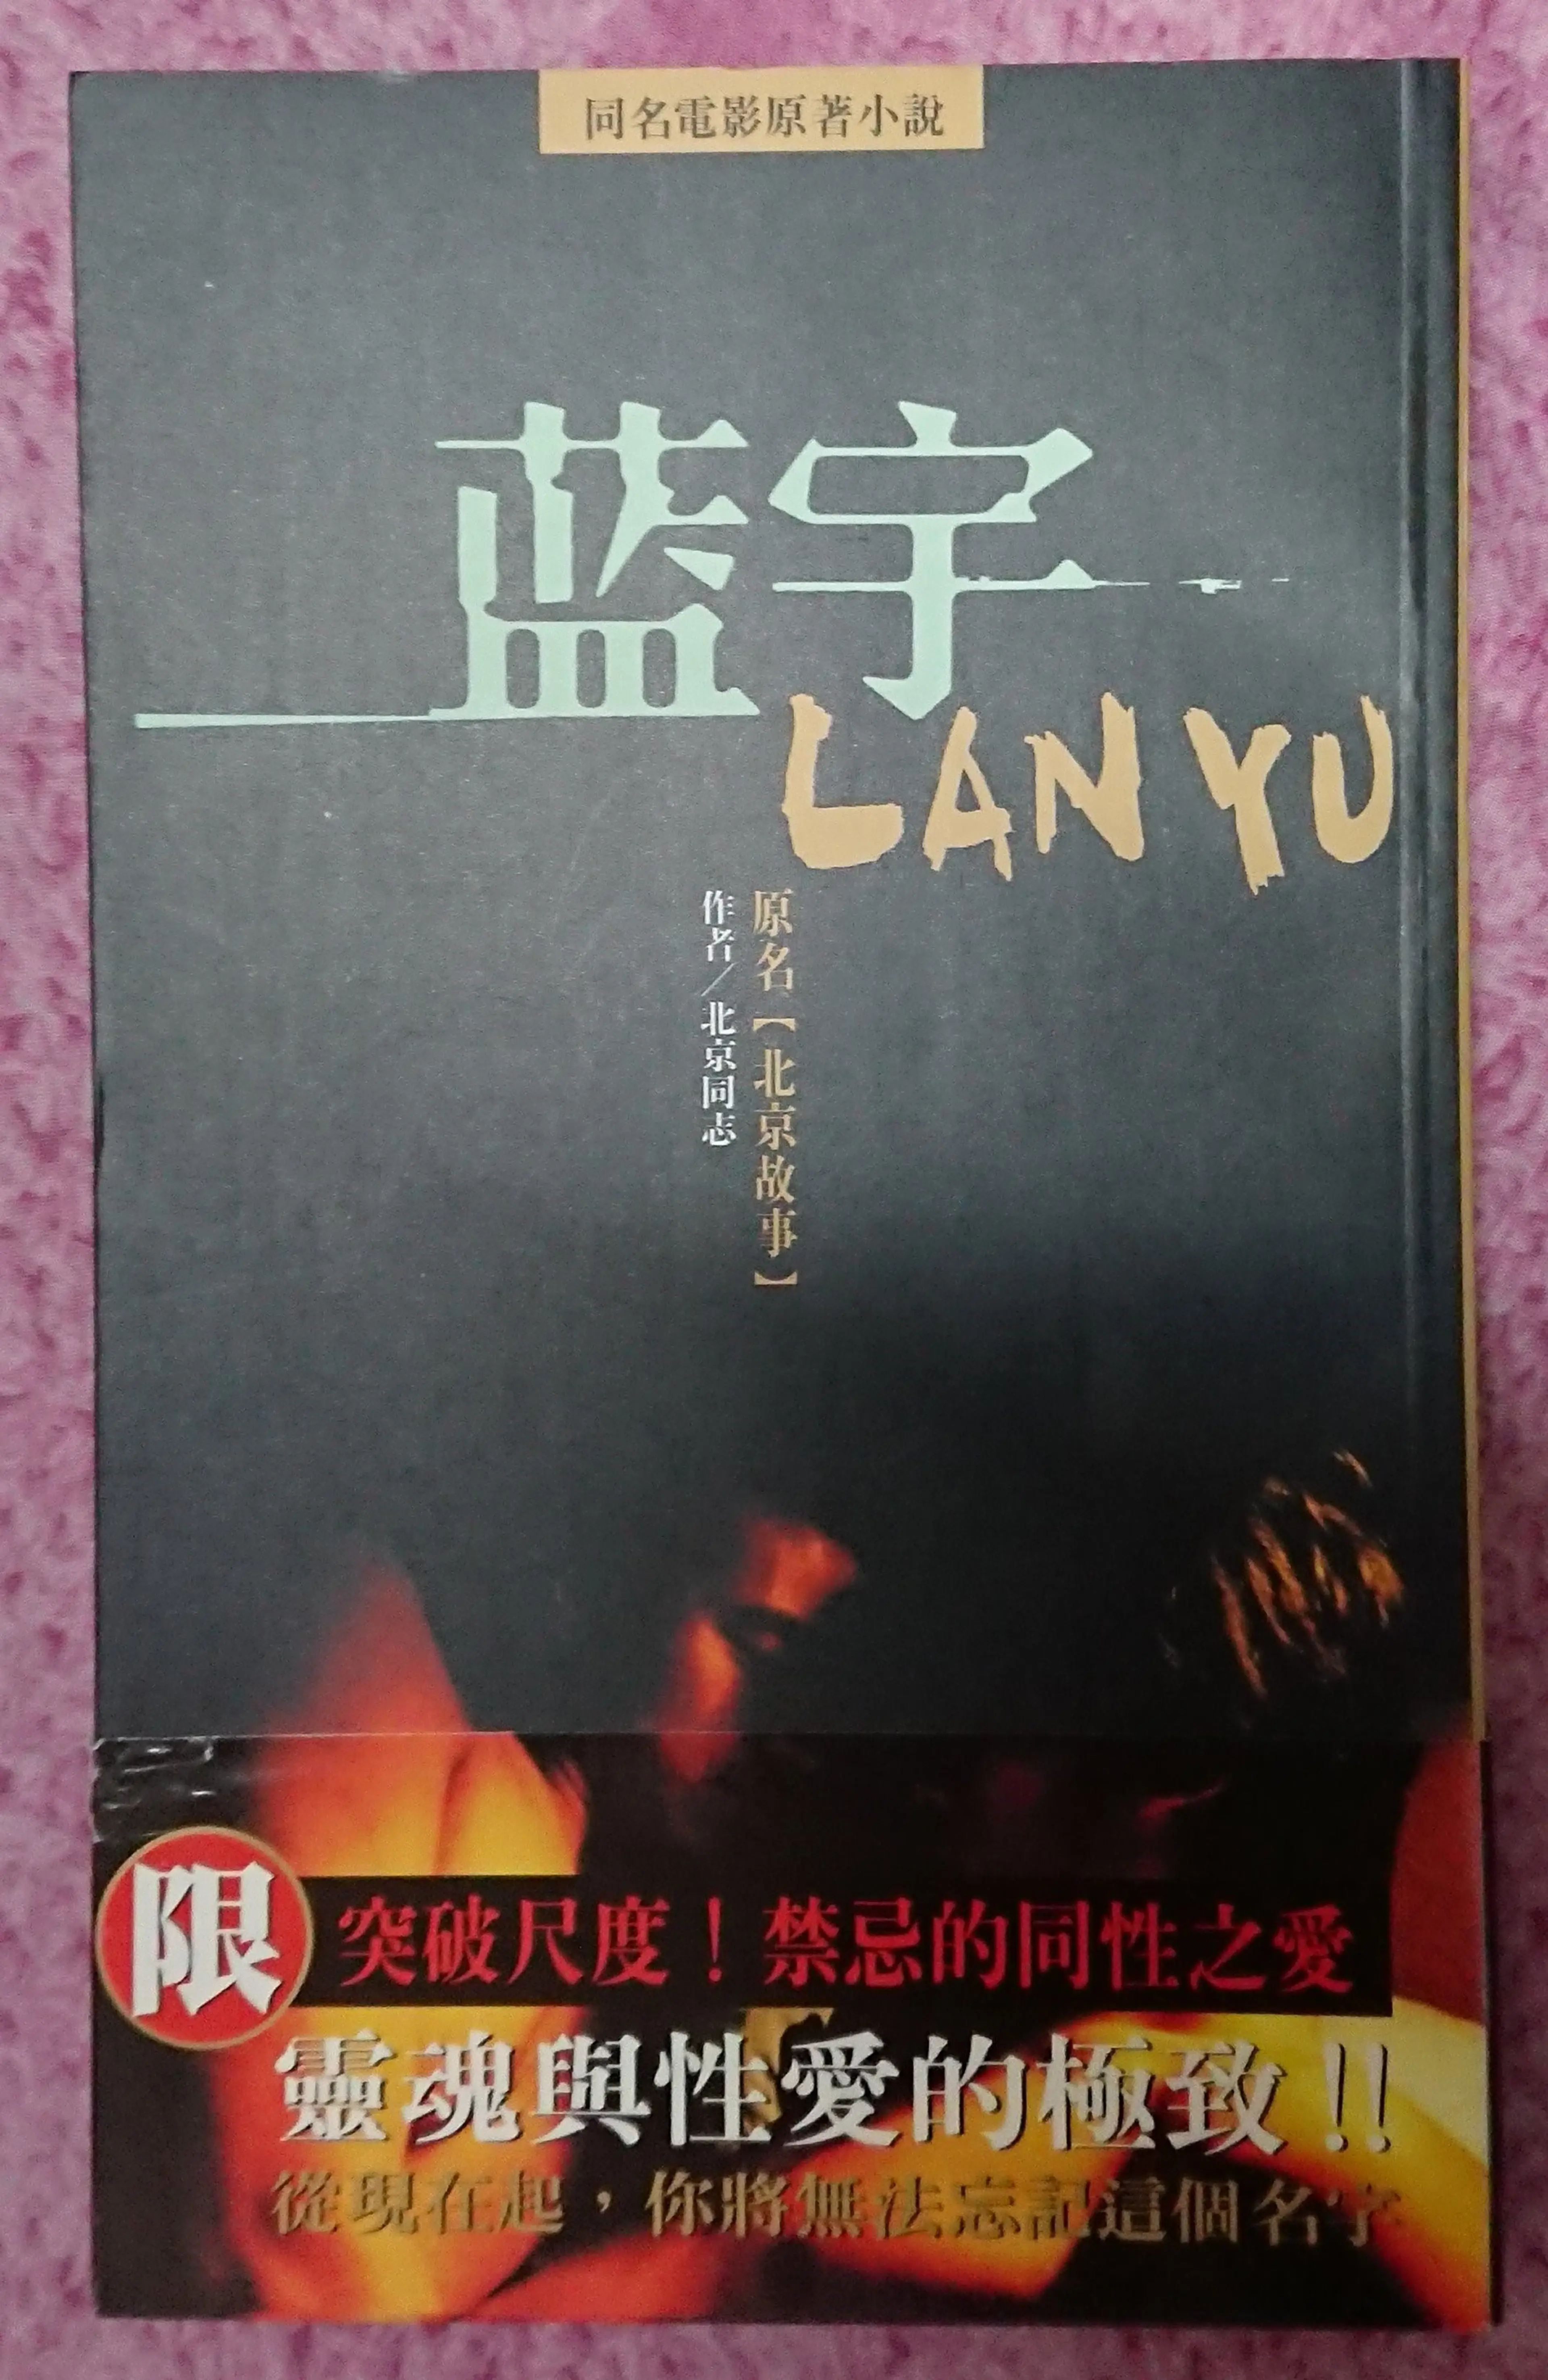 Original 'Lan Yu' novel.